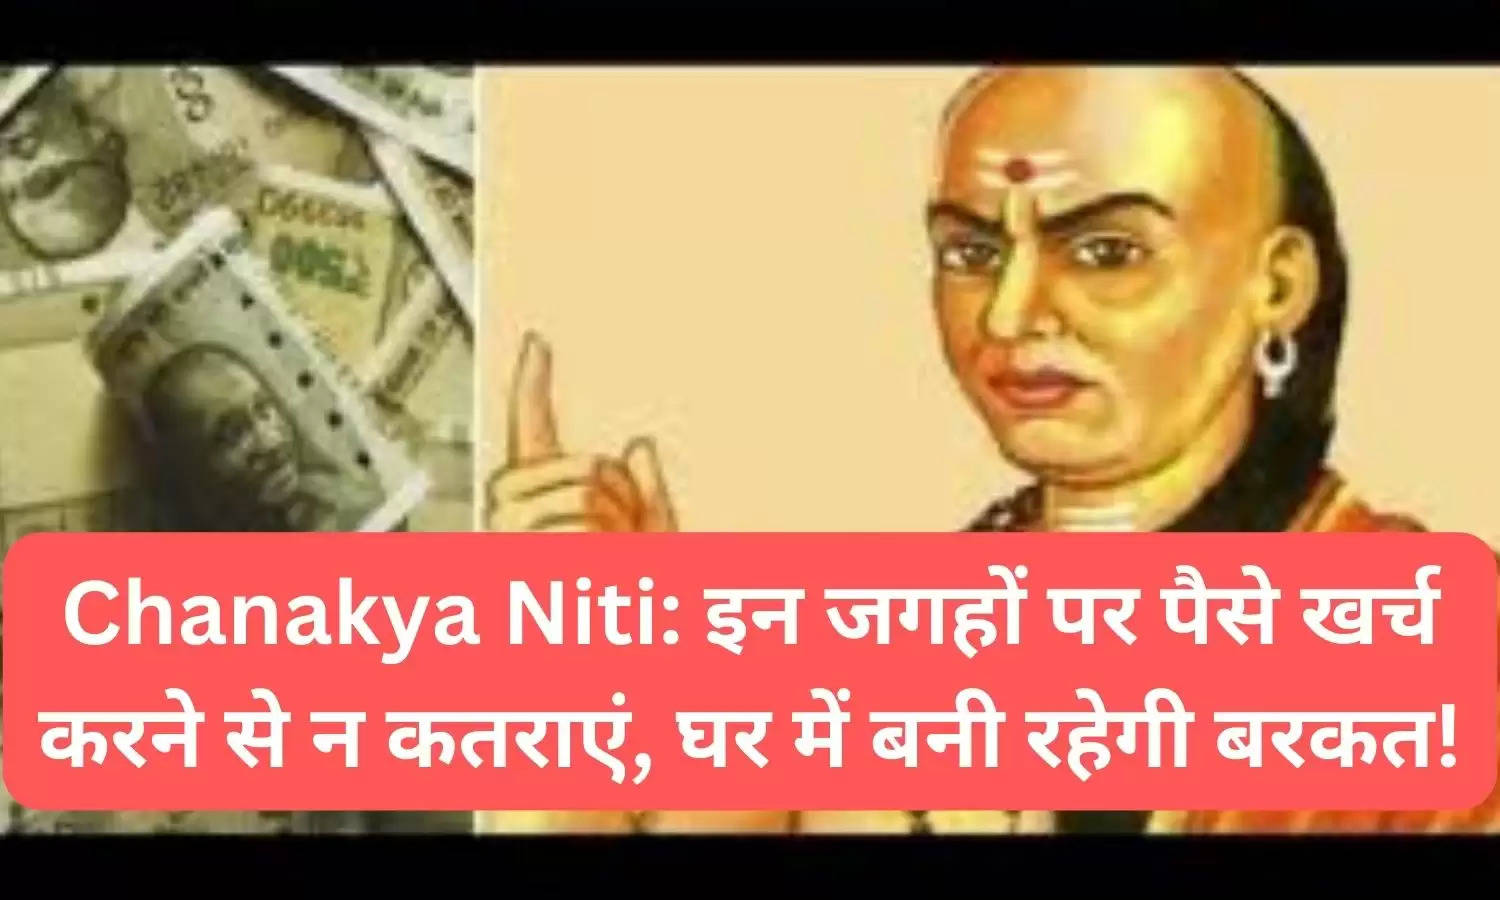 Chanakya Niti: इन जगहों पर पैसे खर्च करने से कभी न कतराएं, घर में बनी रहेगी हमेशा बरकत!